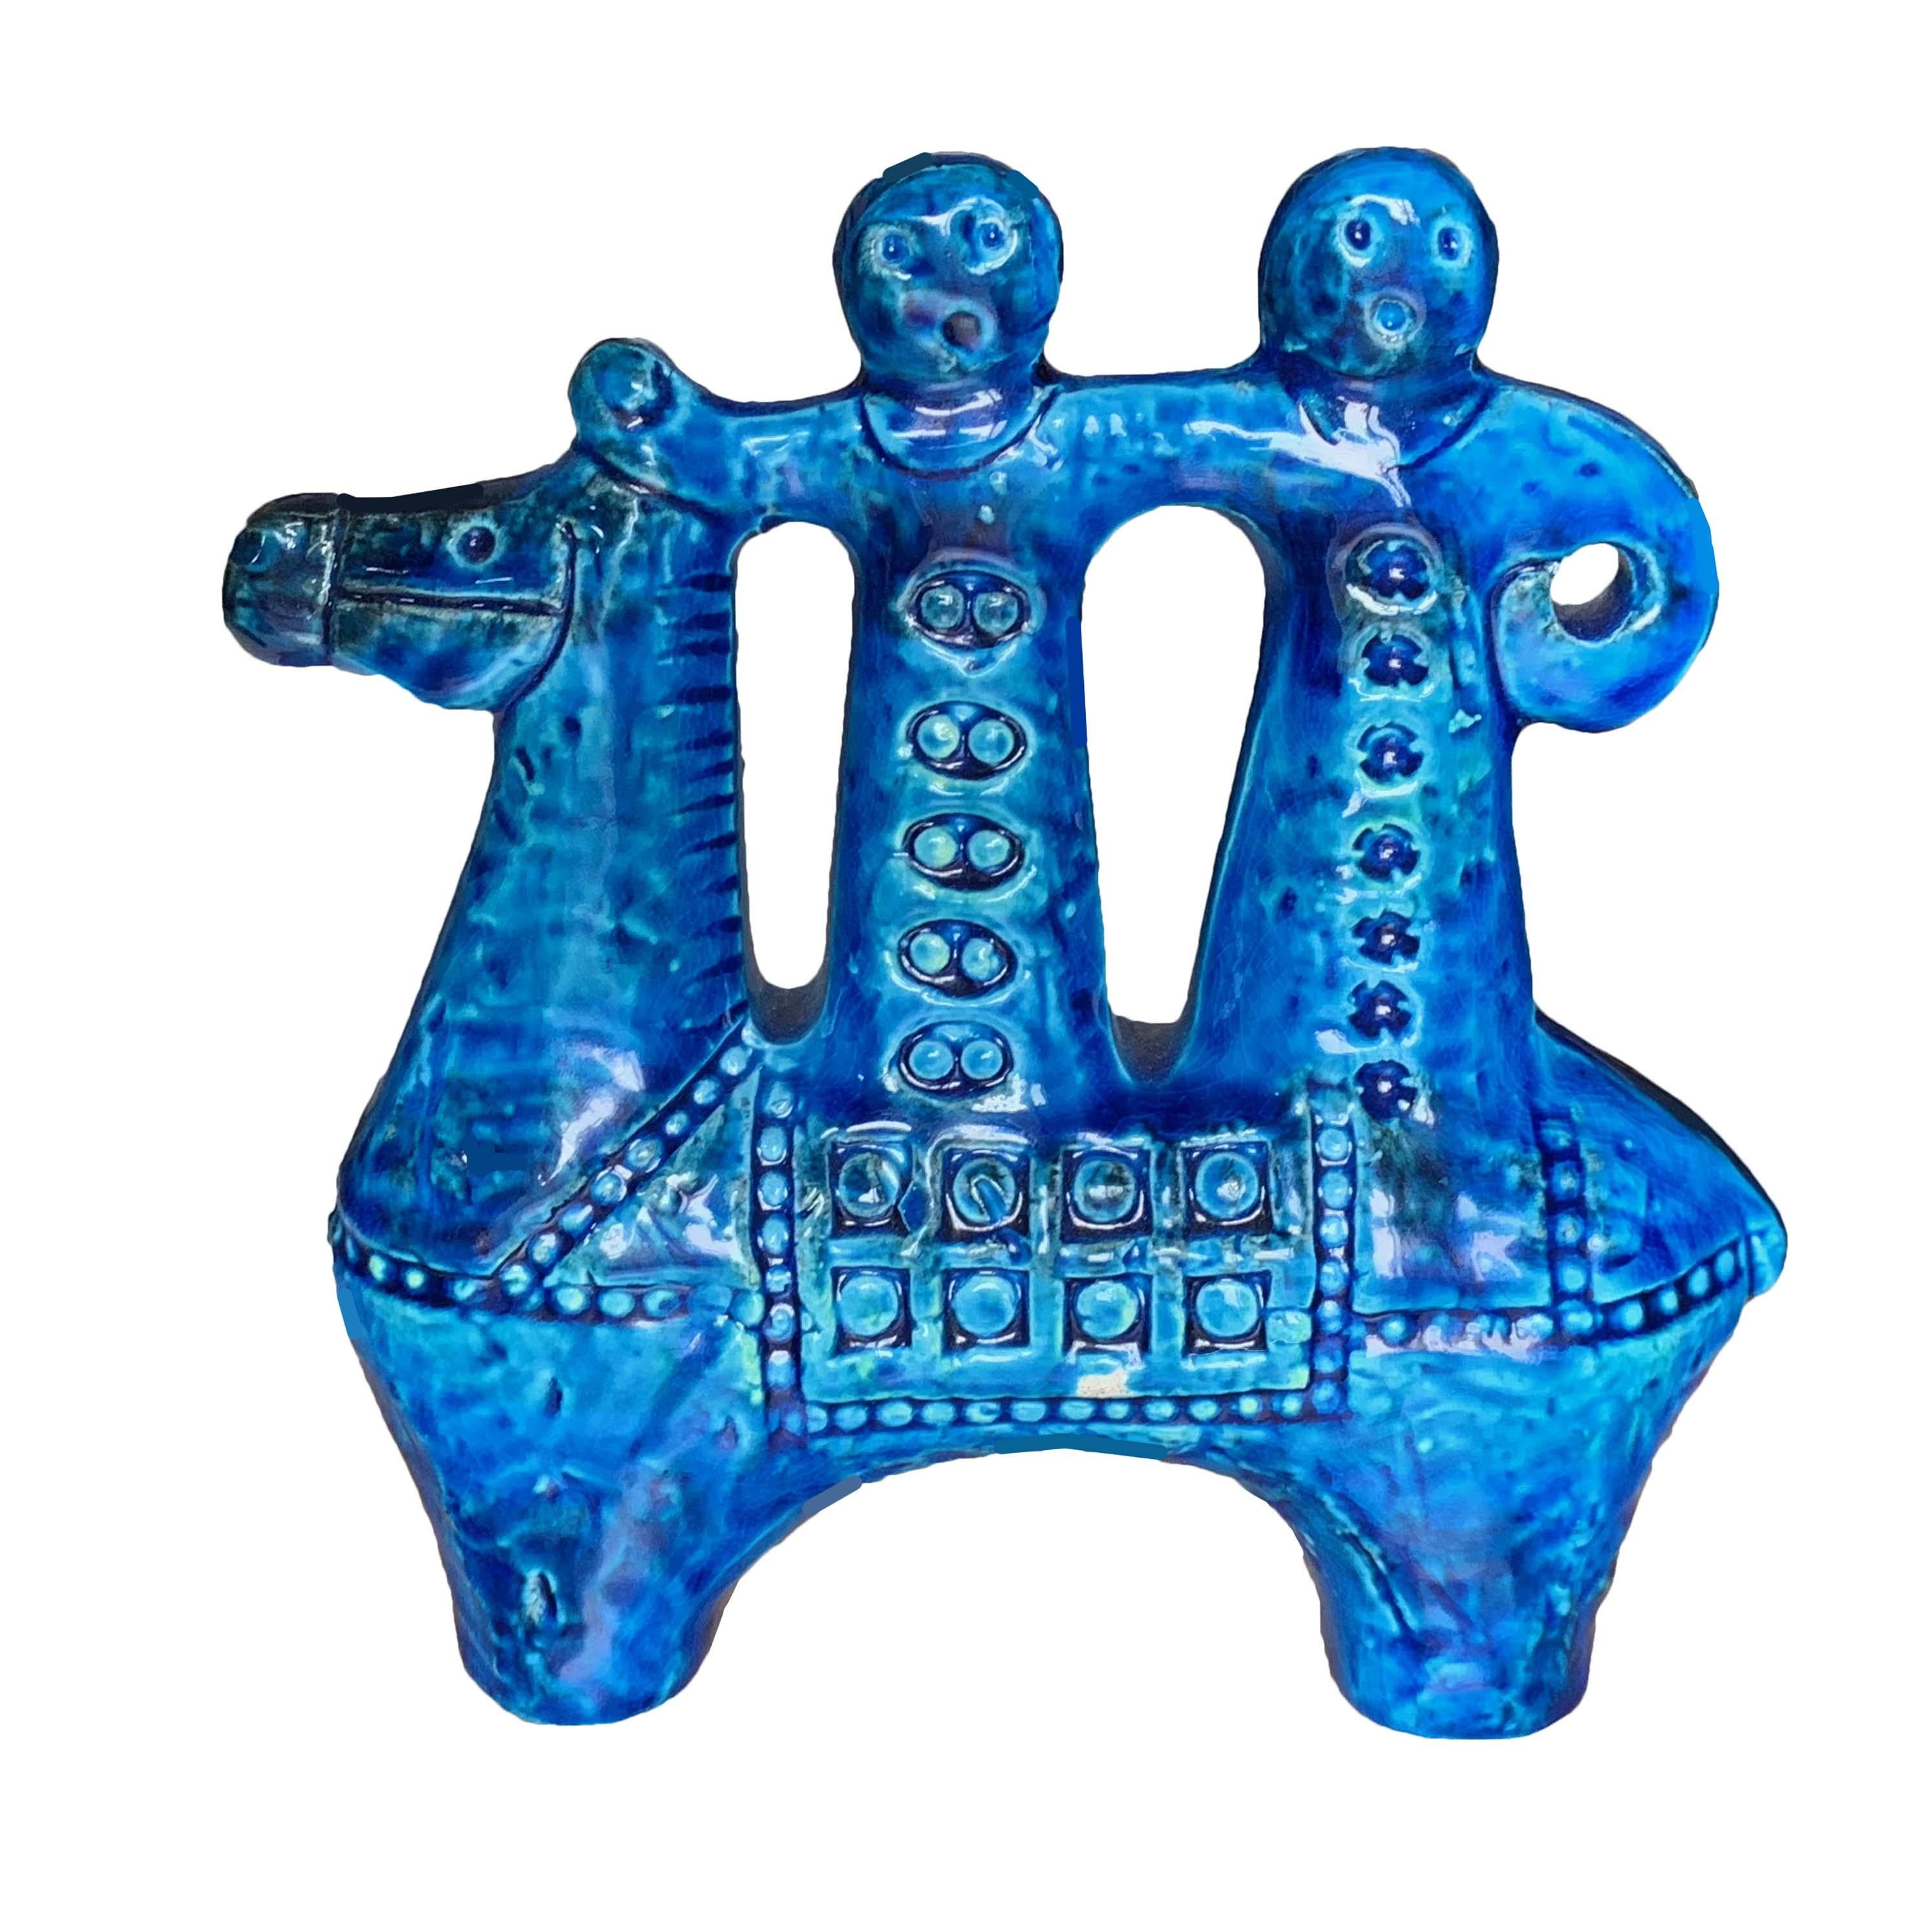 Mid-Century Modern Aldo Londi for Bitossi Rimini Blue Figurine, Horse, Rider, Cavallerizzo Pottery